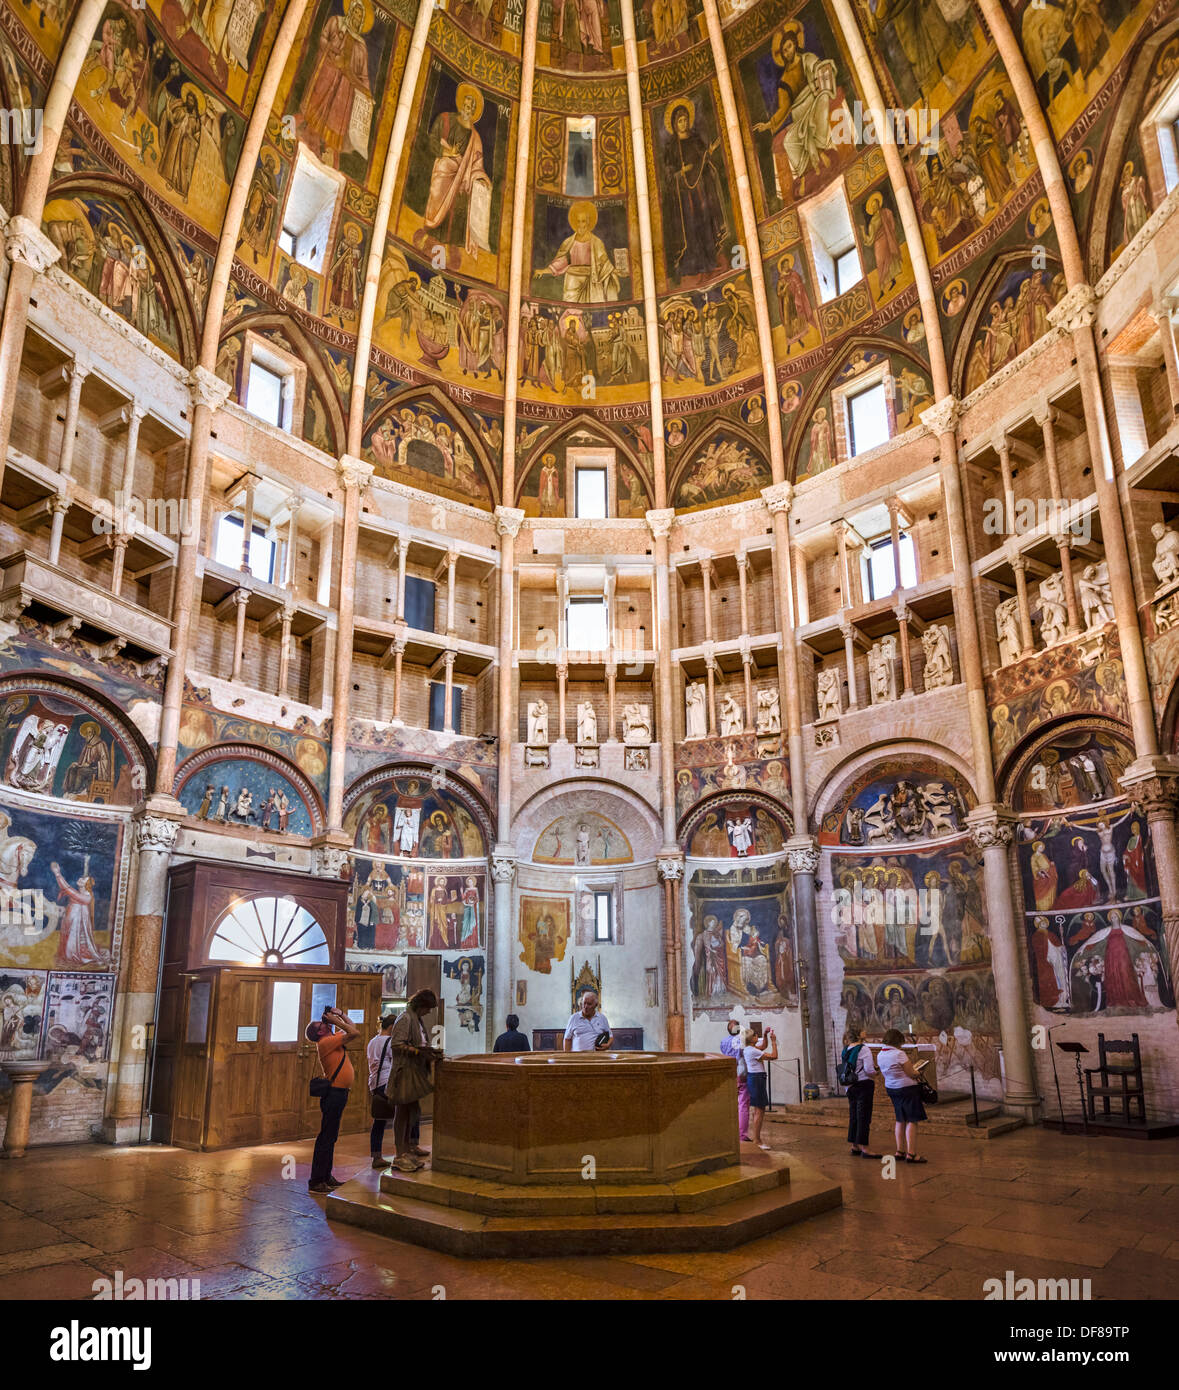 Les touristes à l'intérieur du baptistère médiéval historique, Parme, Emilie-Romagne, Italie Banque D'Images